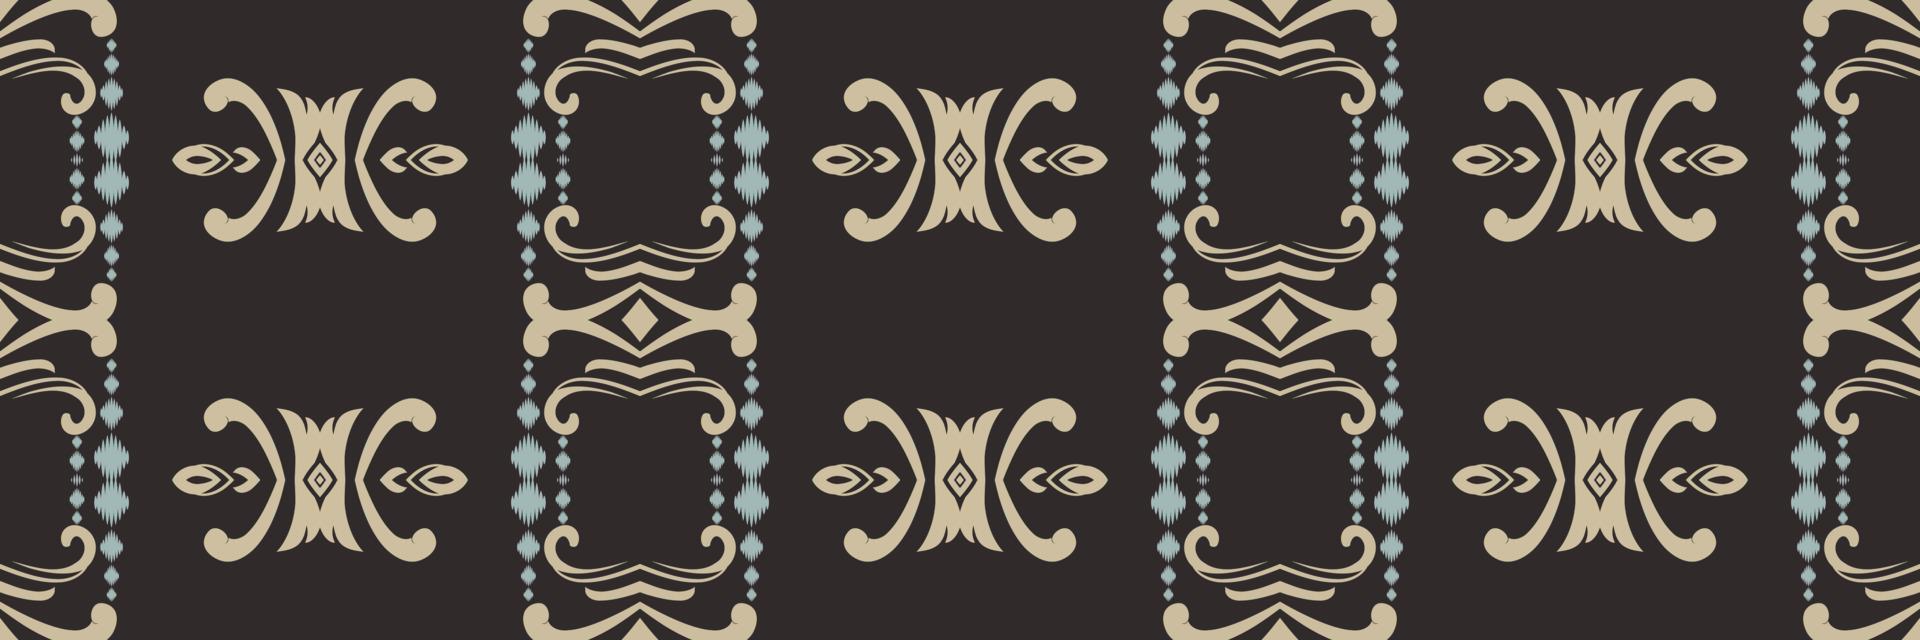 motivo têxtil batik ikat designs padrão sem costura design de vetor digital para impressão saree kurti borneo tecido borda escova símbolos amostras roupas de festa